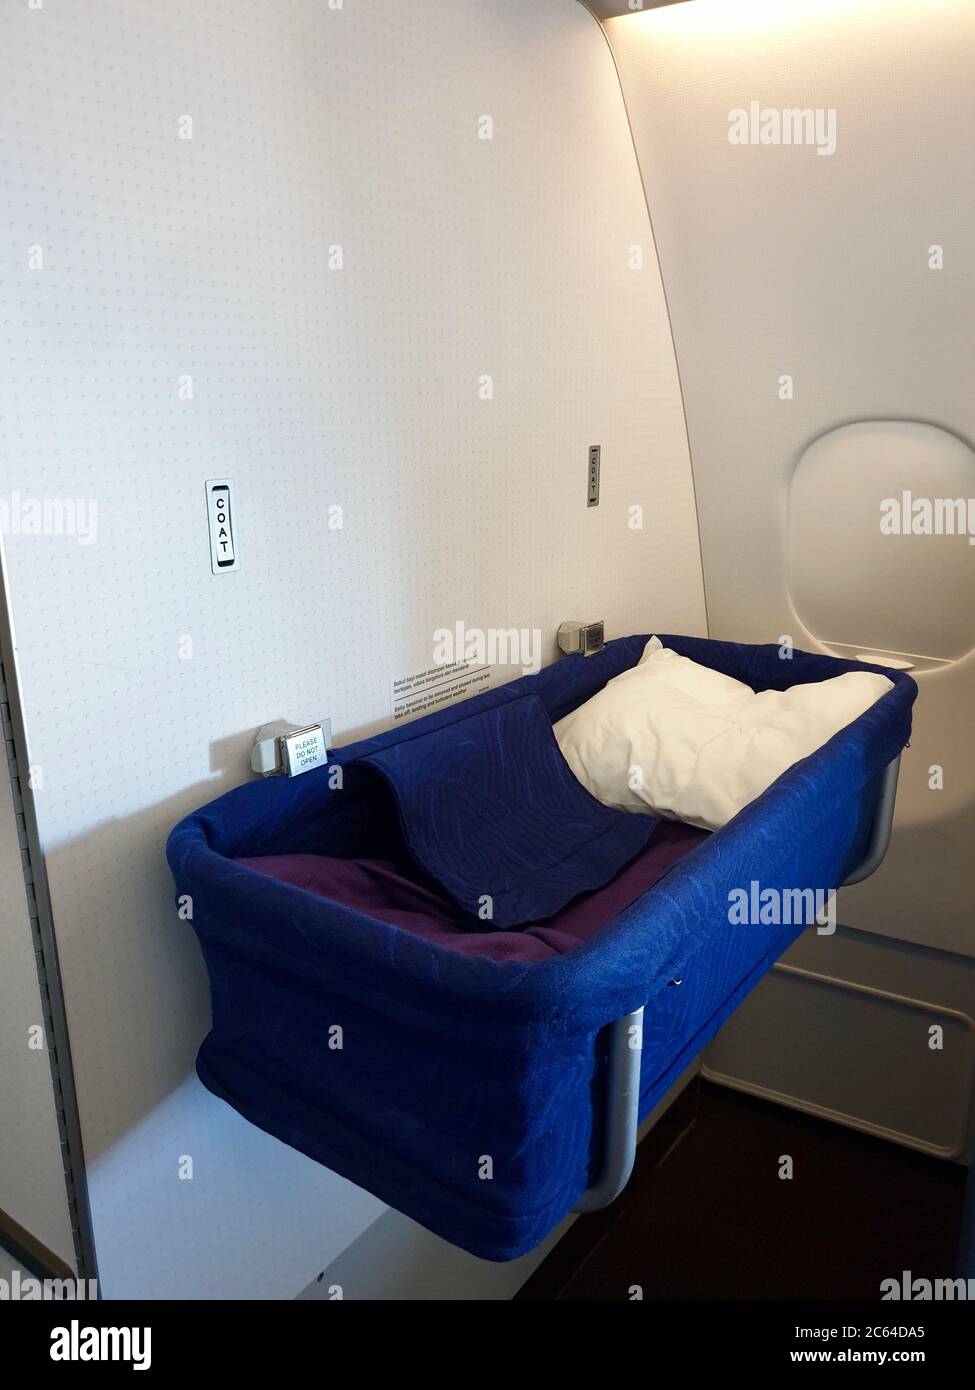 bassinet seat in jet airways